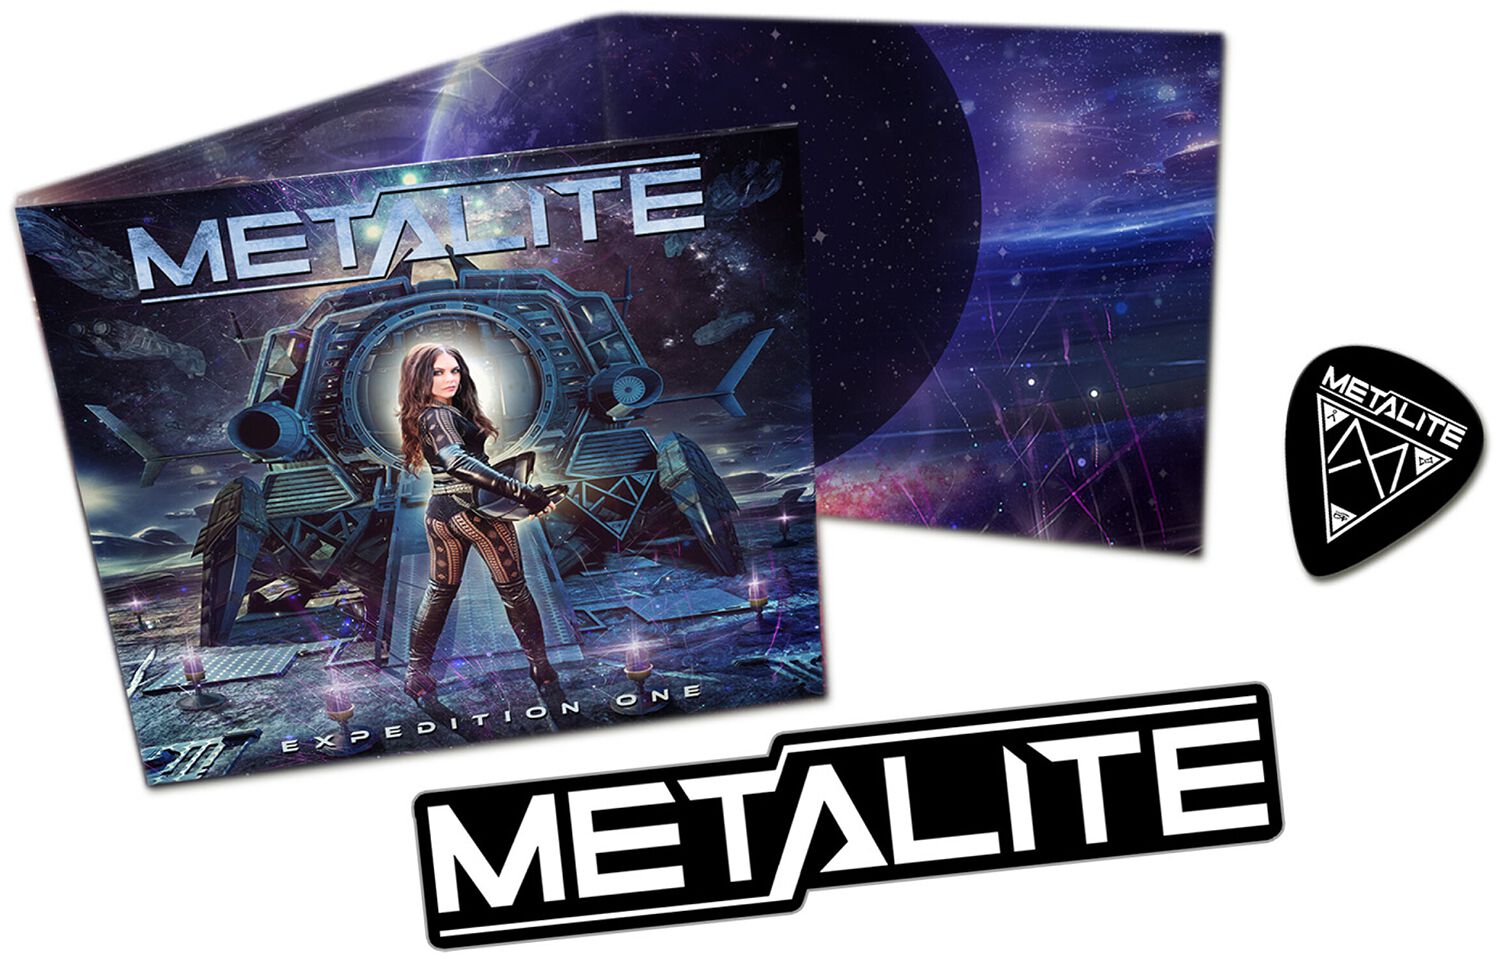 Expedition one von Metalite - CD (Boxset, Limited Edition) von Metalite